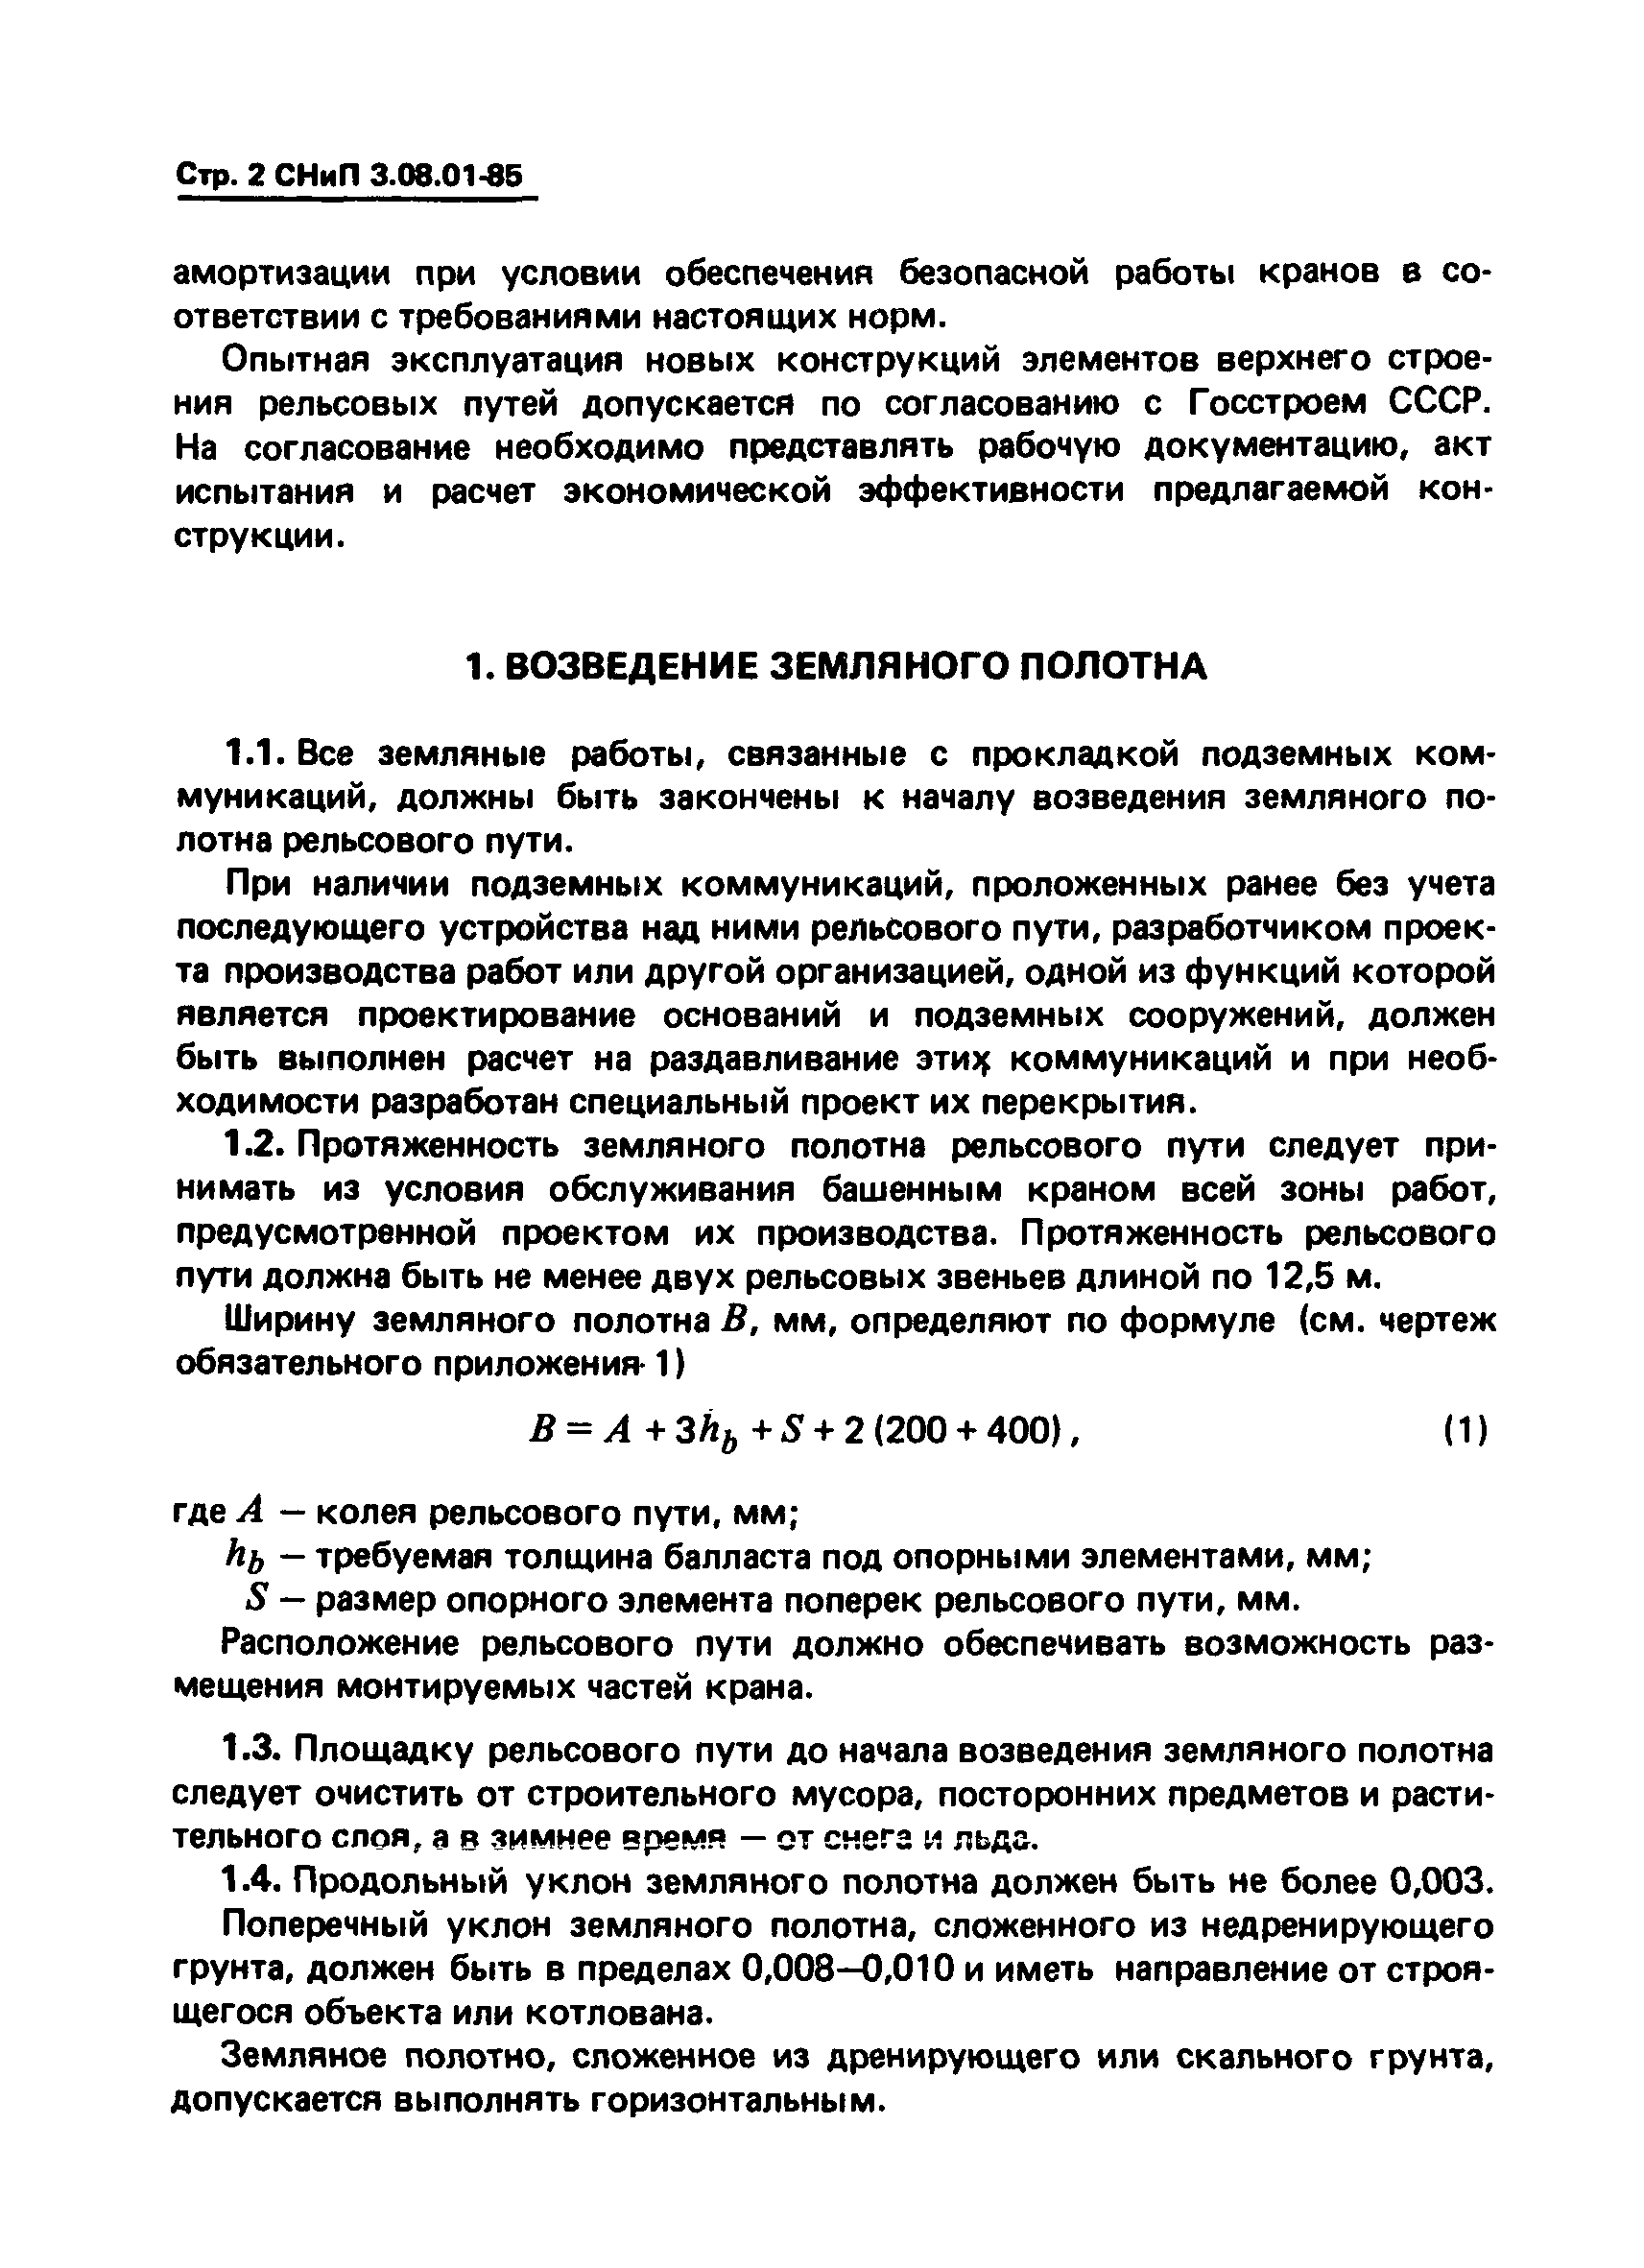 СНиП 3.08.01-85